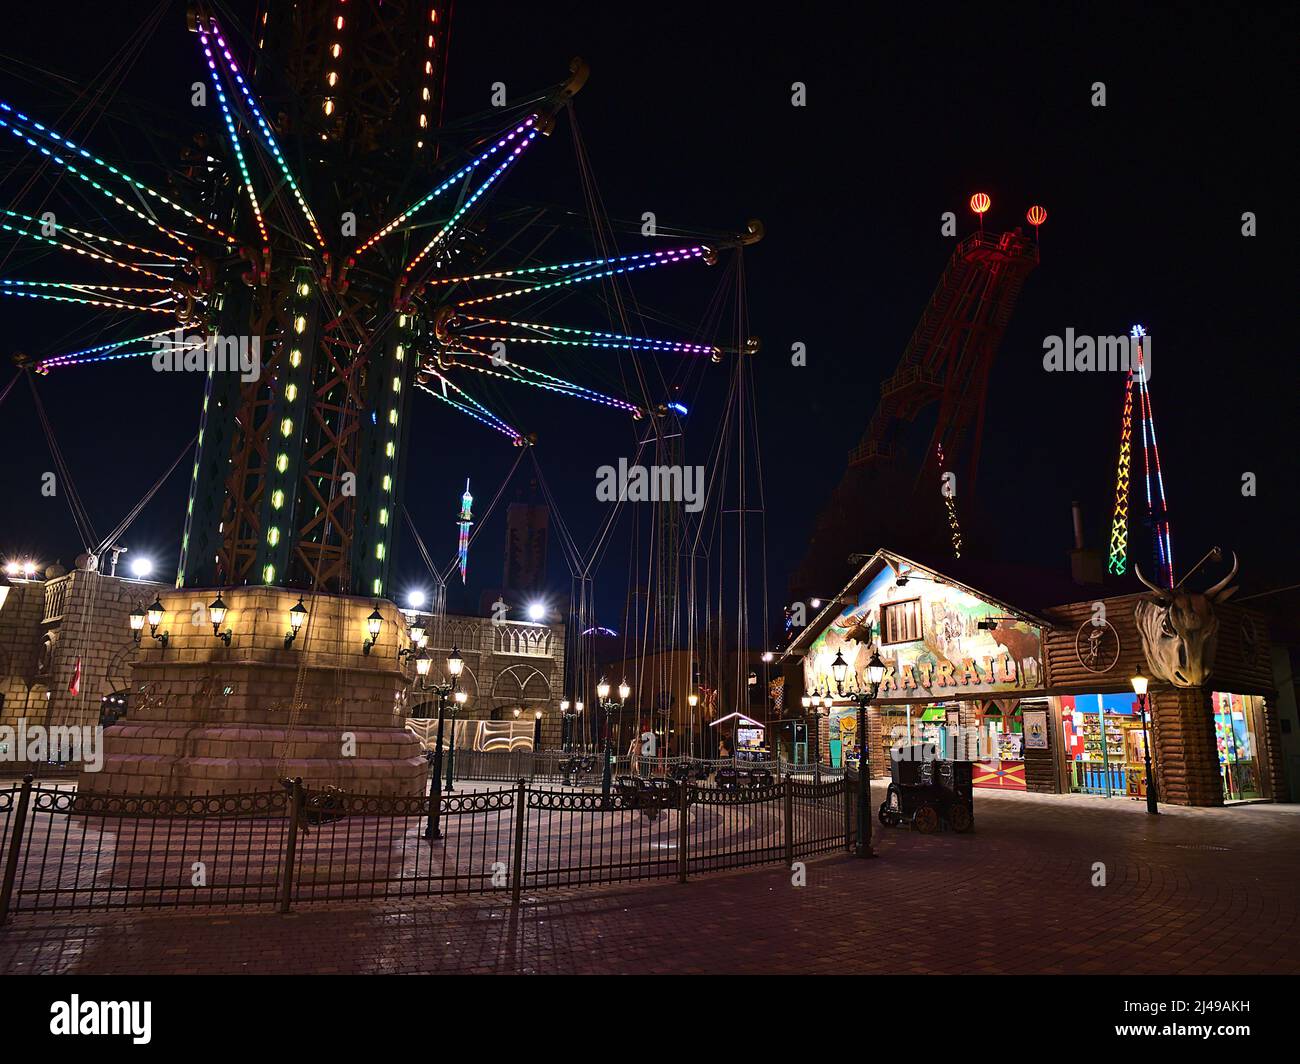 Vista notturna del famoso parco divertimenti Wurstelprater a Vienna, Austria, con torre di lancio illuminata e negozi in serata. Foto Stock